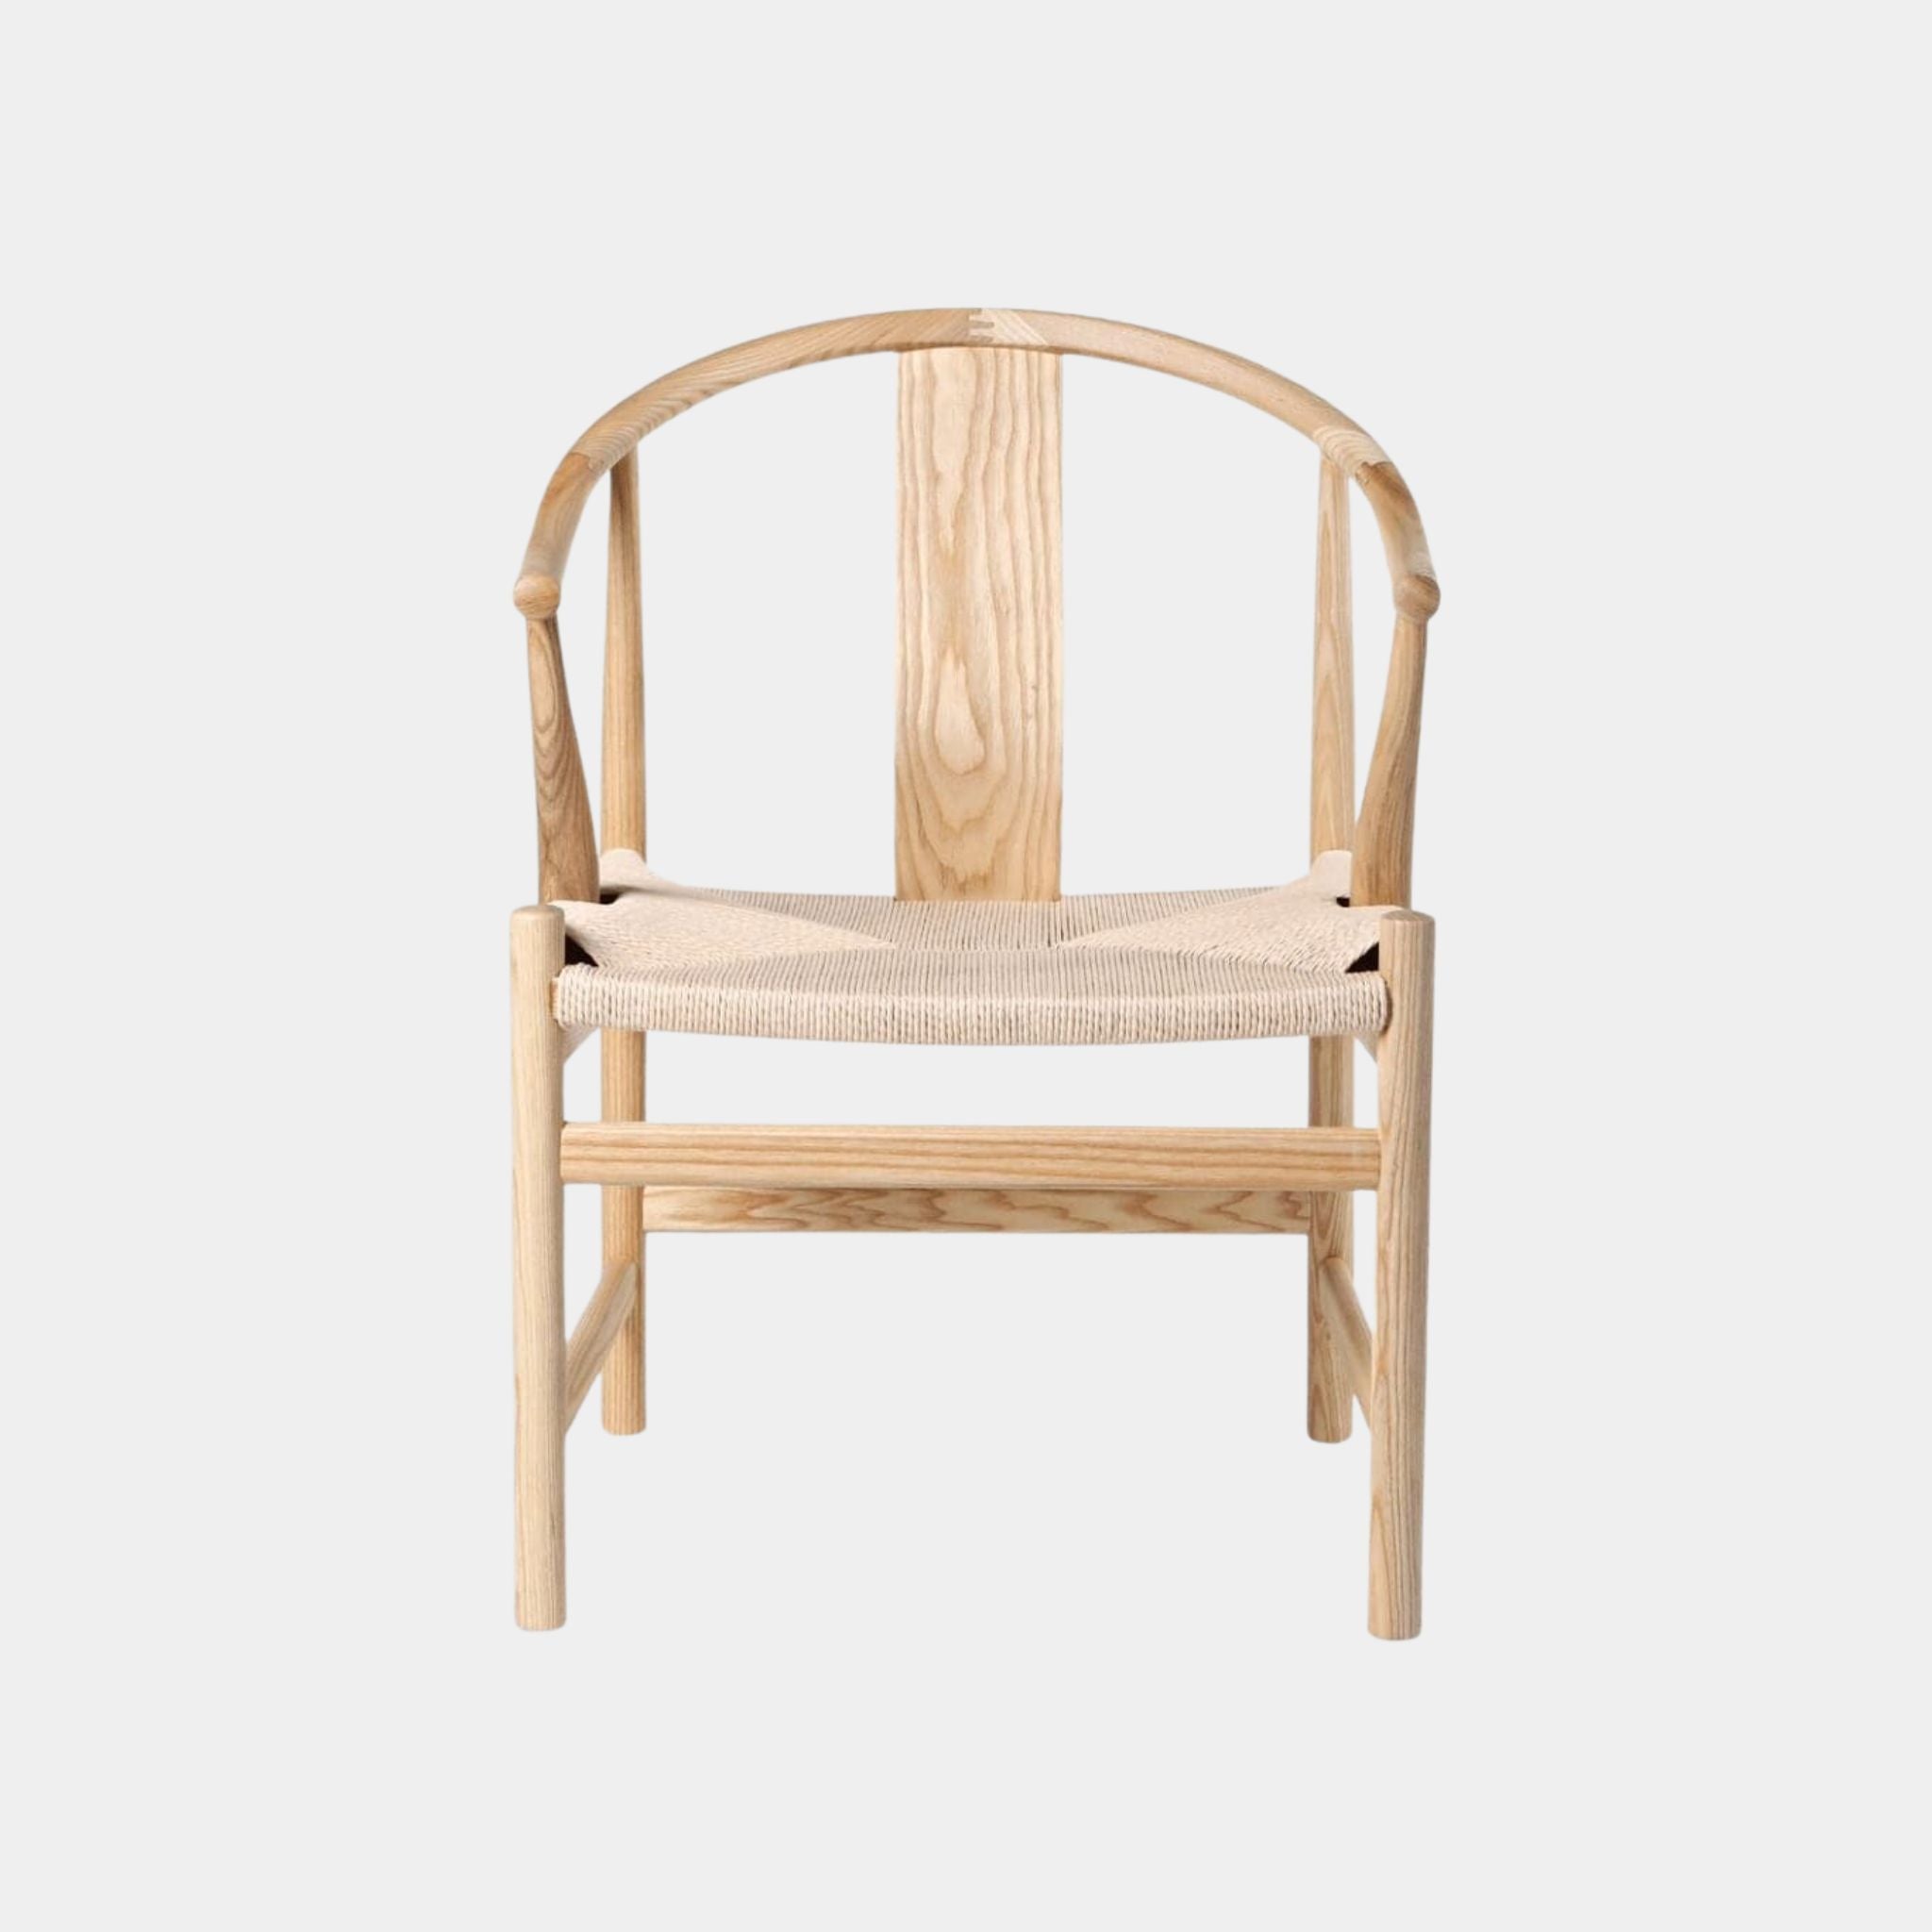 PP66 Chinese Chair | Hans Wegner Replica - The Feelter